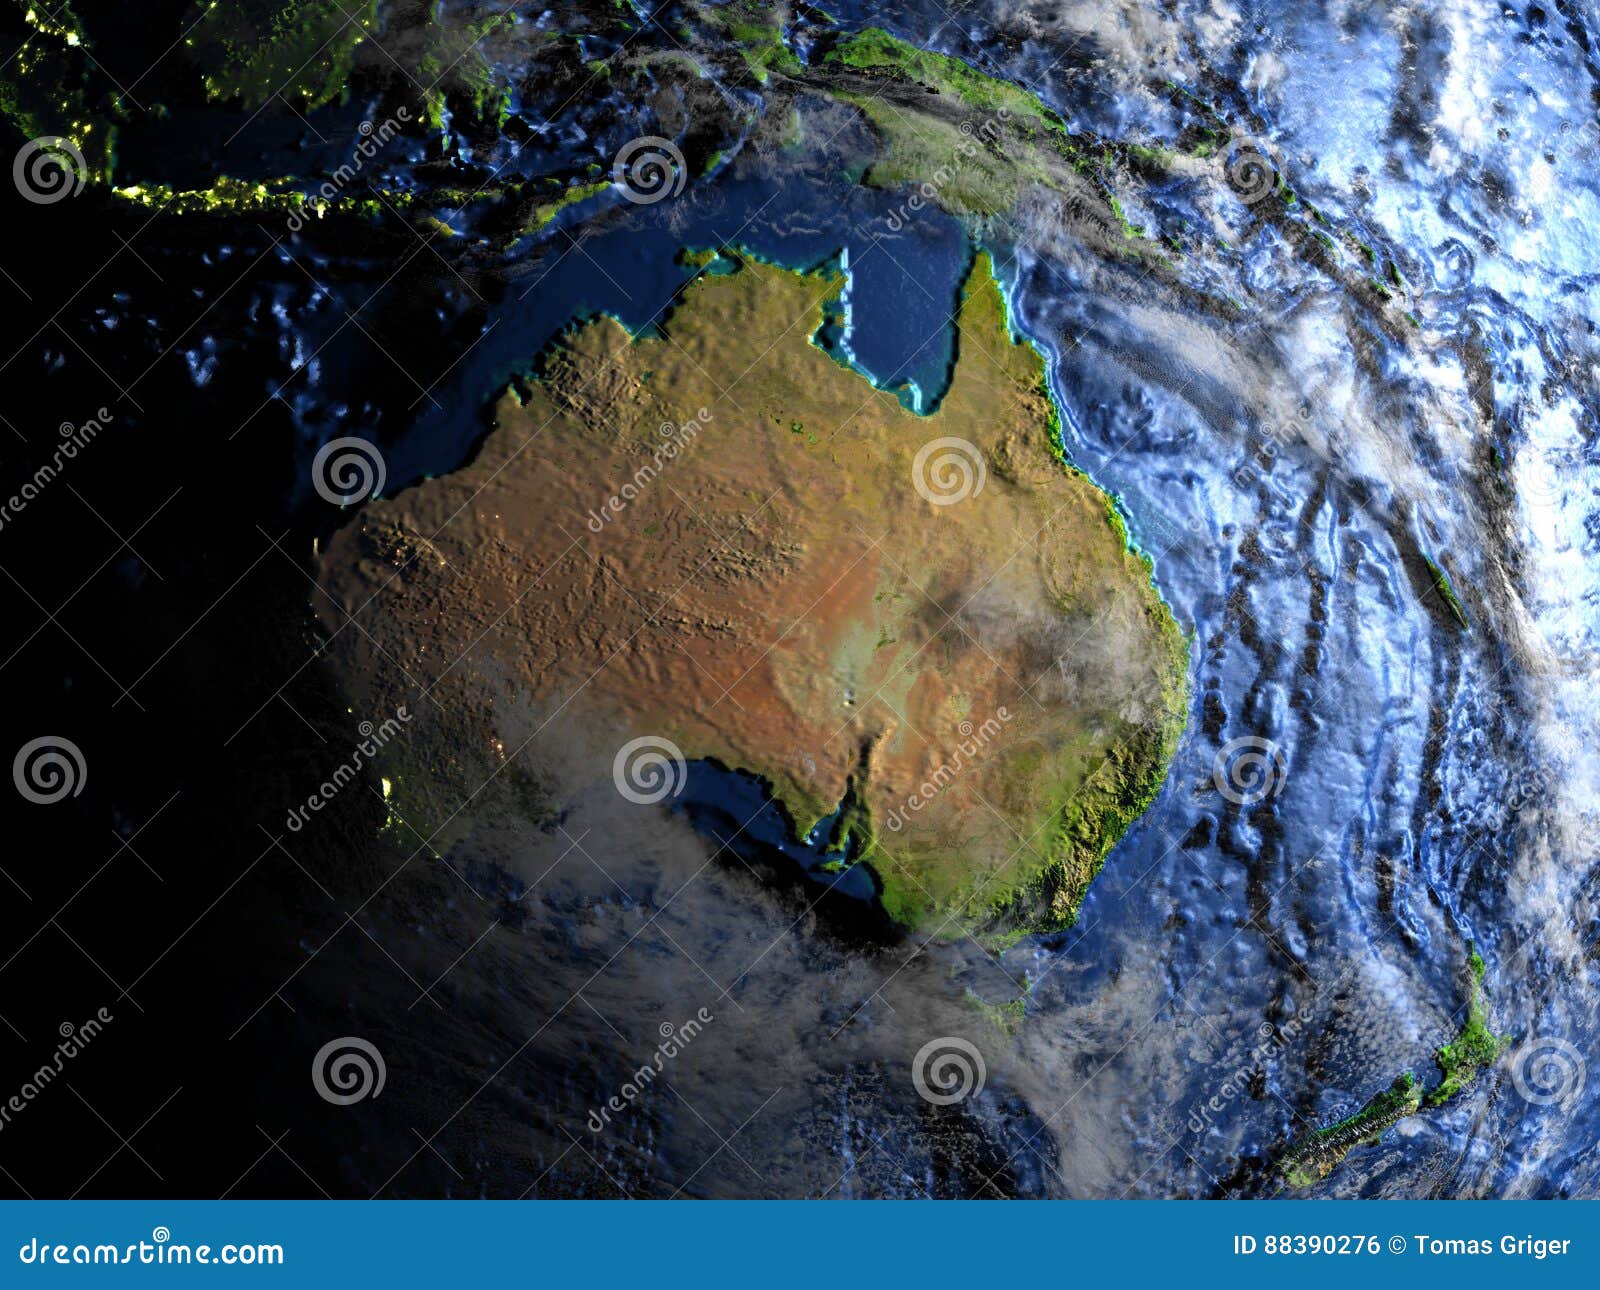 Неизвестная южная земля название. Новая Зеландия из космоса. Австралия и Океания из космоса. Индонезия вид из космоса. Земля Австралия.